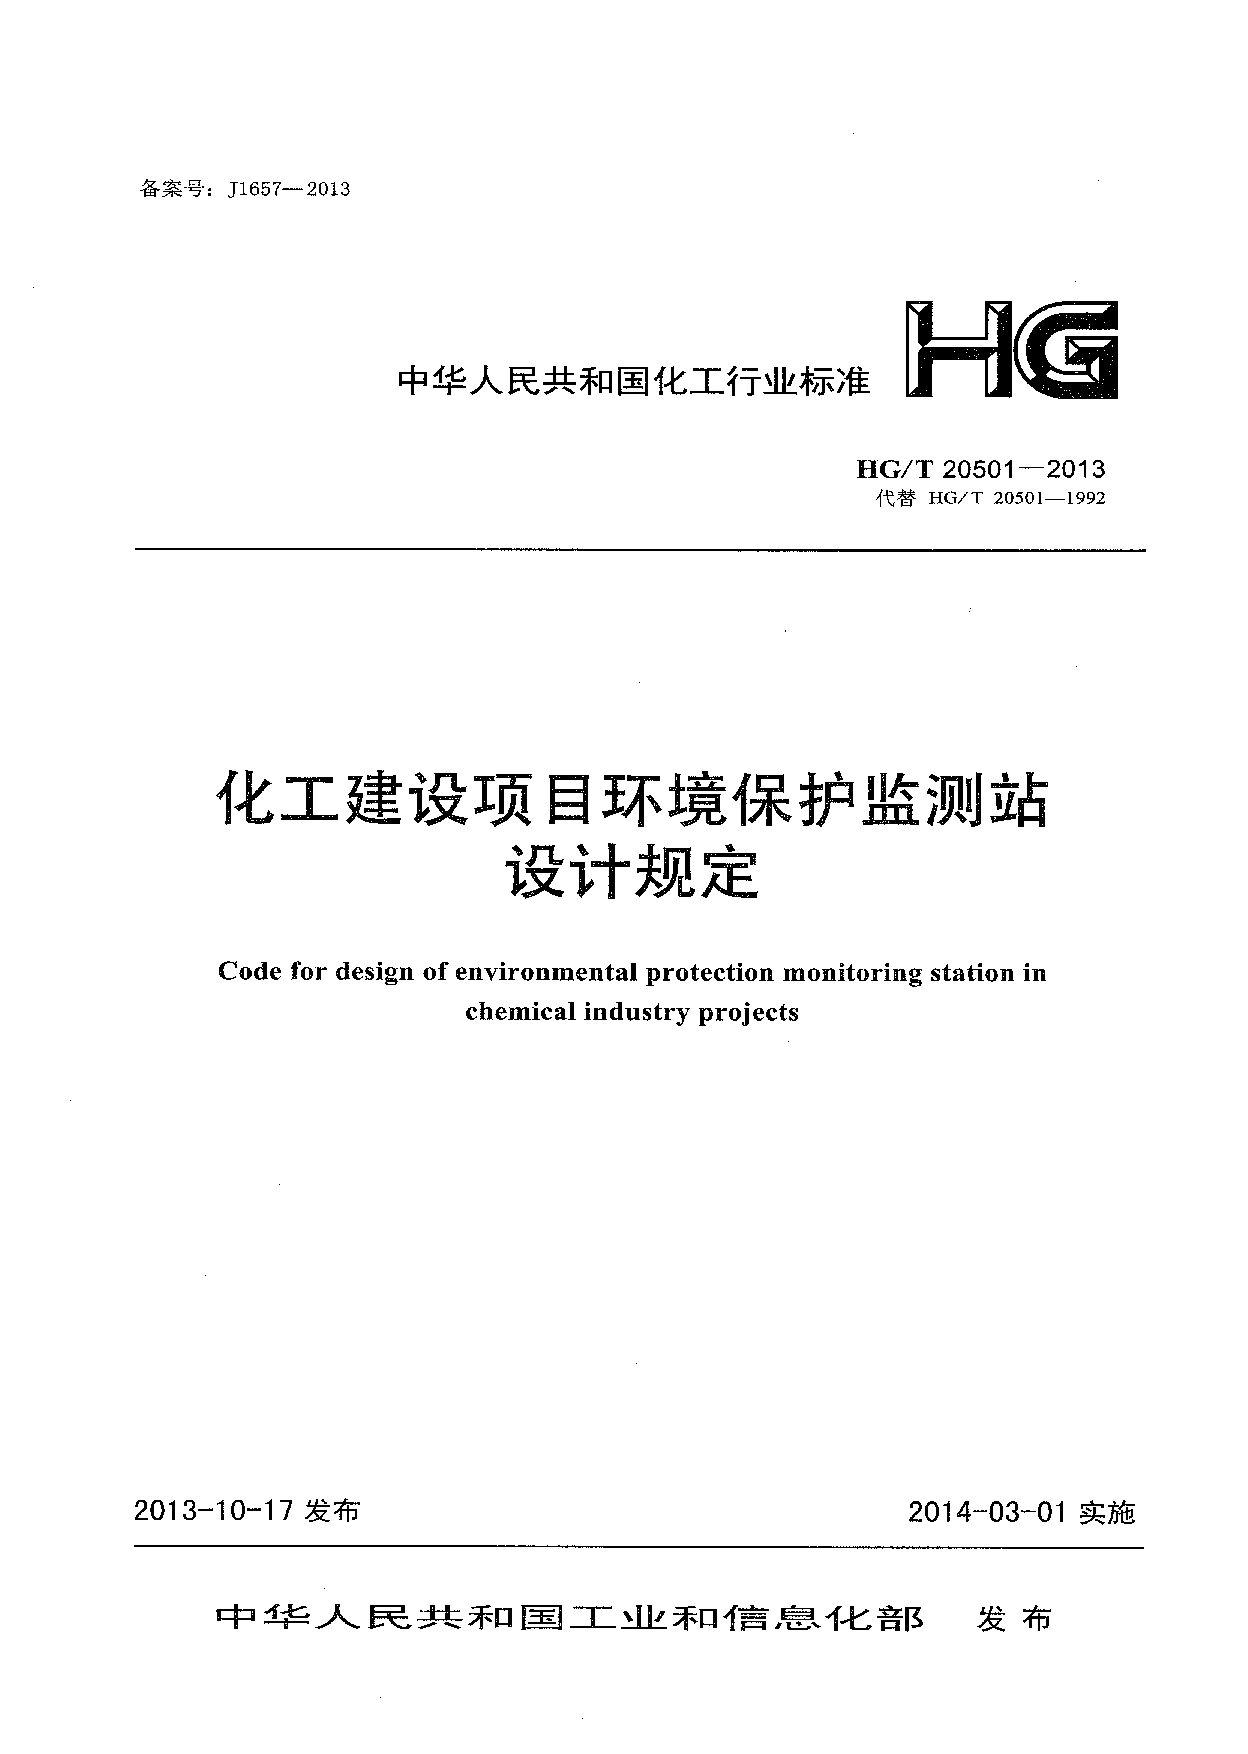 HG/T 20501-2013封面图